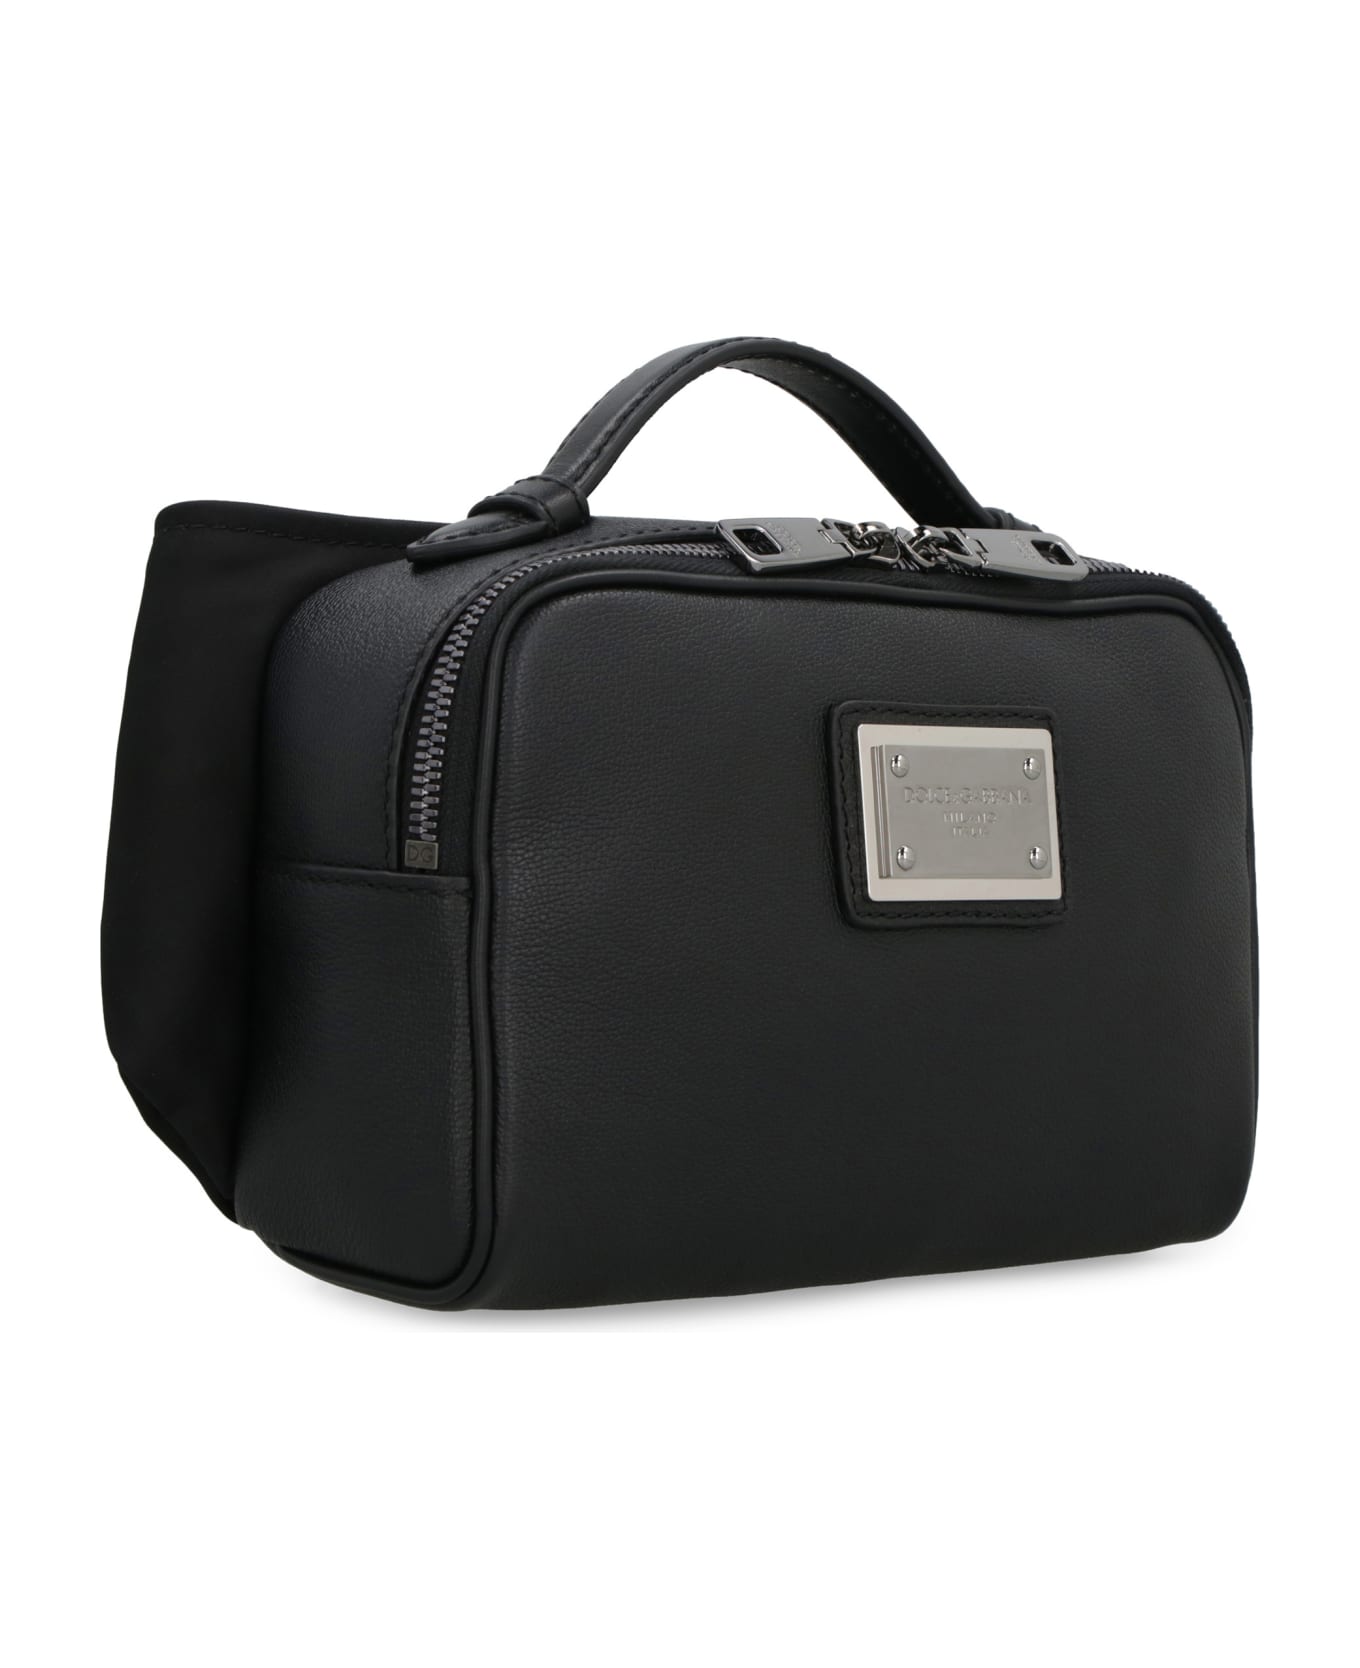 Dolce & Gabbana Leather Belt Bag - black トートバッグ